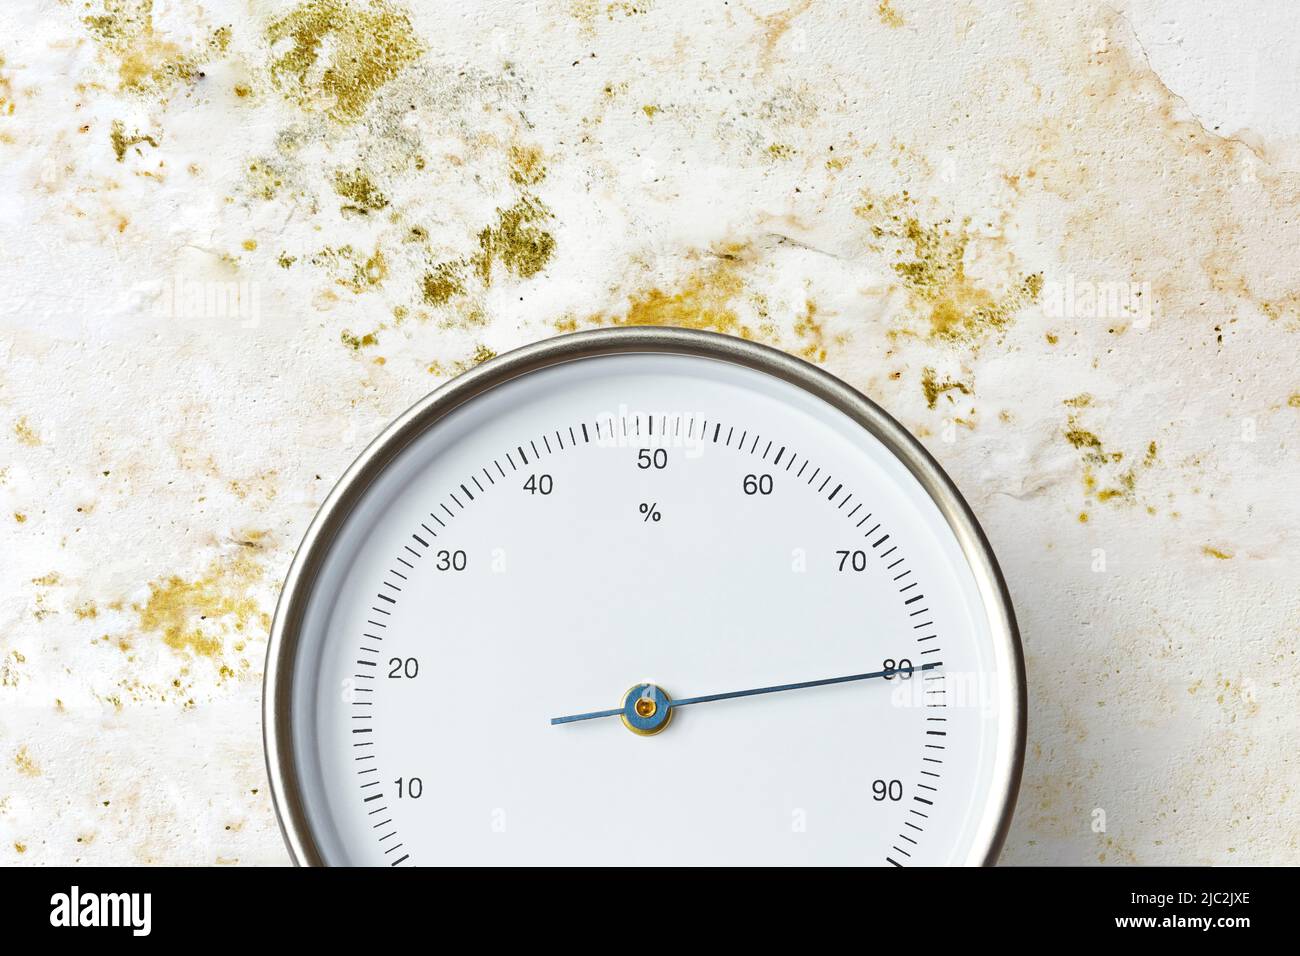 Higrómetro analógico o medidor de humedad que mide 80% de humedad frente a una pared blanca cubierta de moho amarillo y verde. Foto de stock